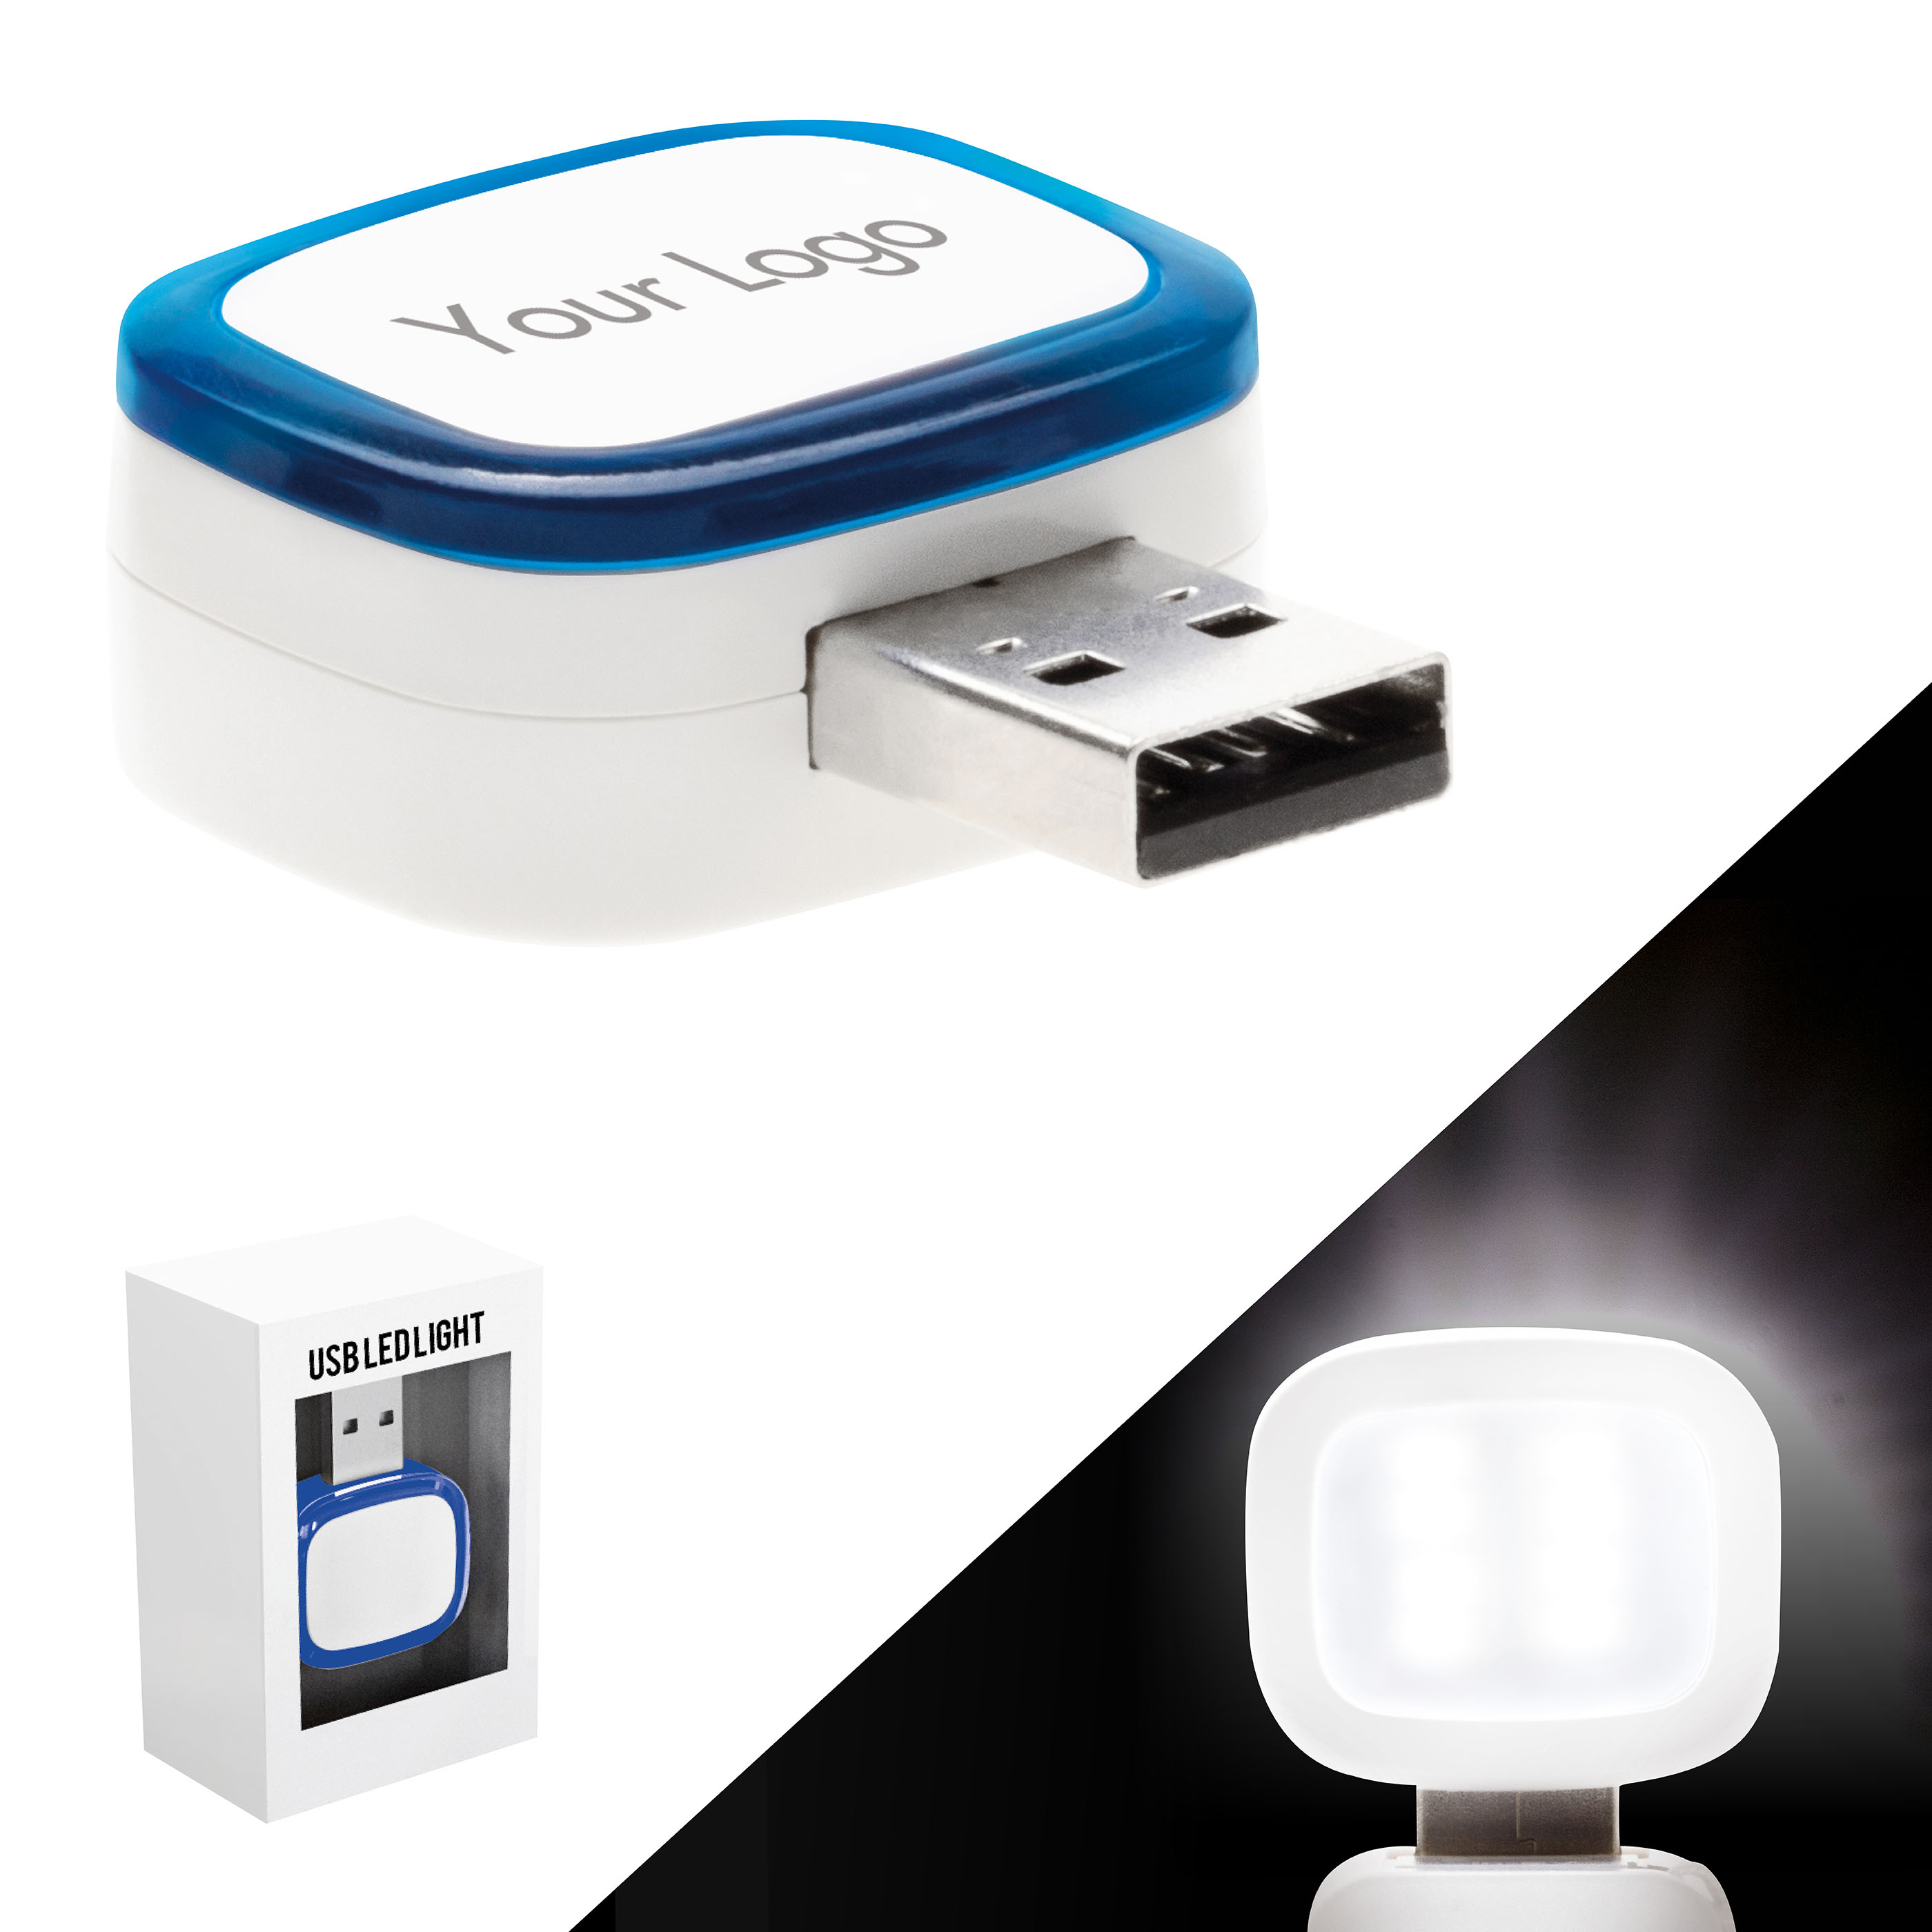 USB LED / SMD LIGHT FOR POWER BANKS